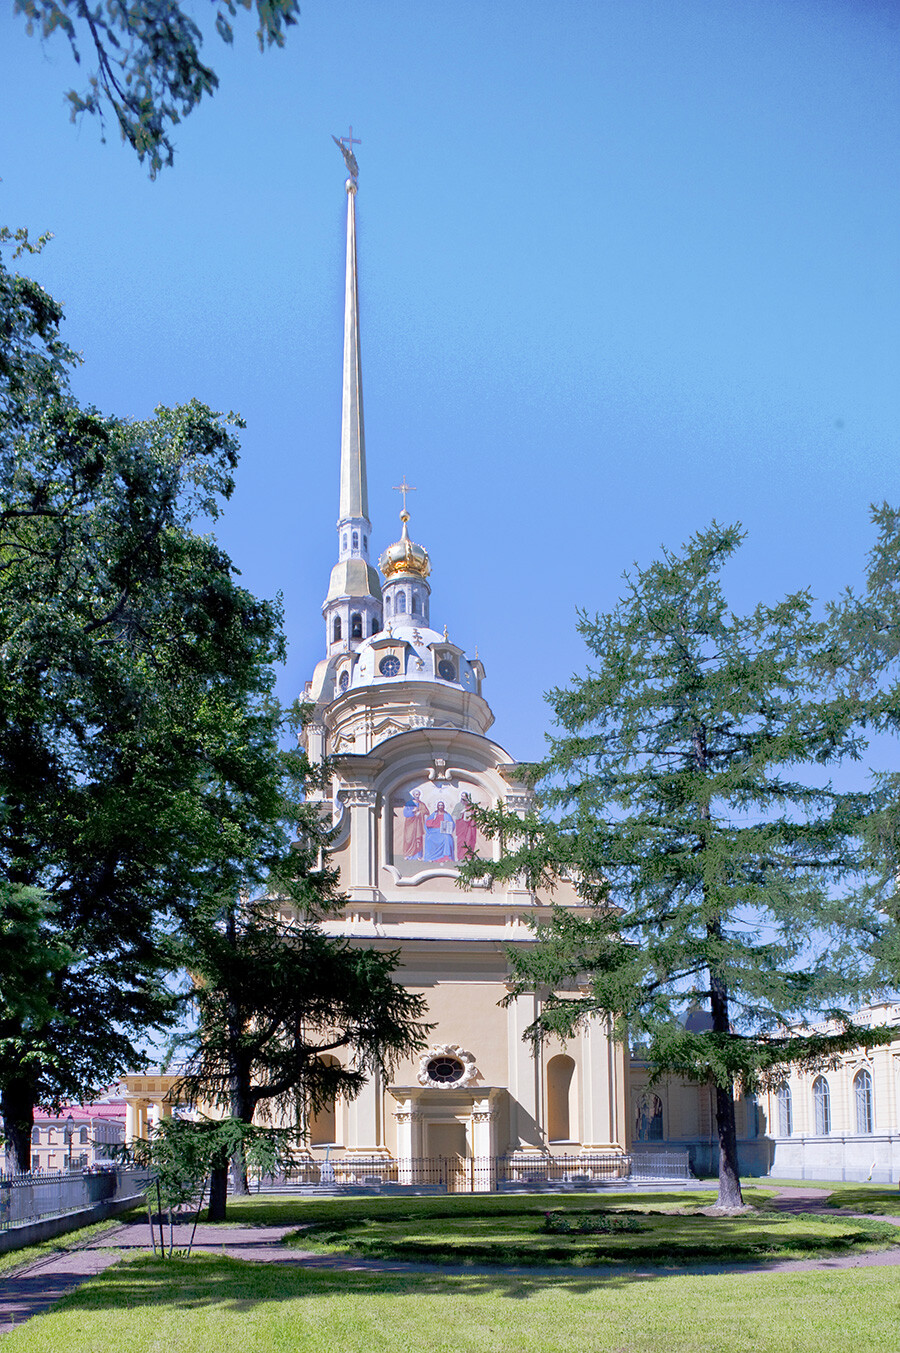 Cattedrale dei Santi Pietro e Paolo. Veduta orientale con l'affresco di Cristo affiancato dai Santi Pietro e Paolo. 6 giugno 2015